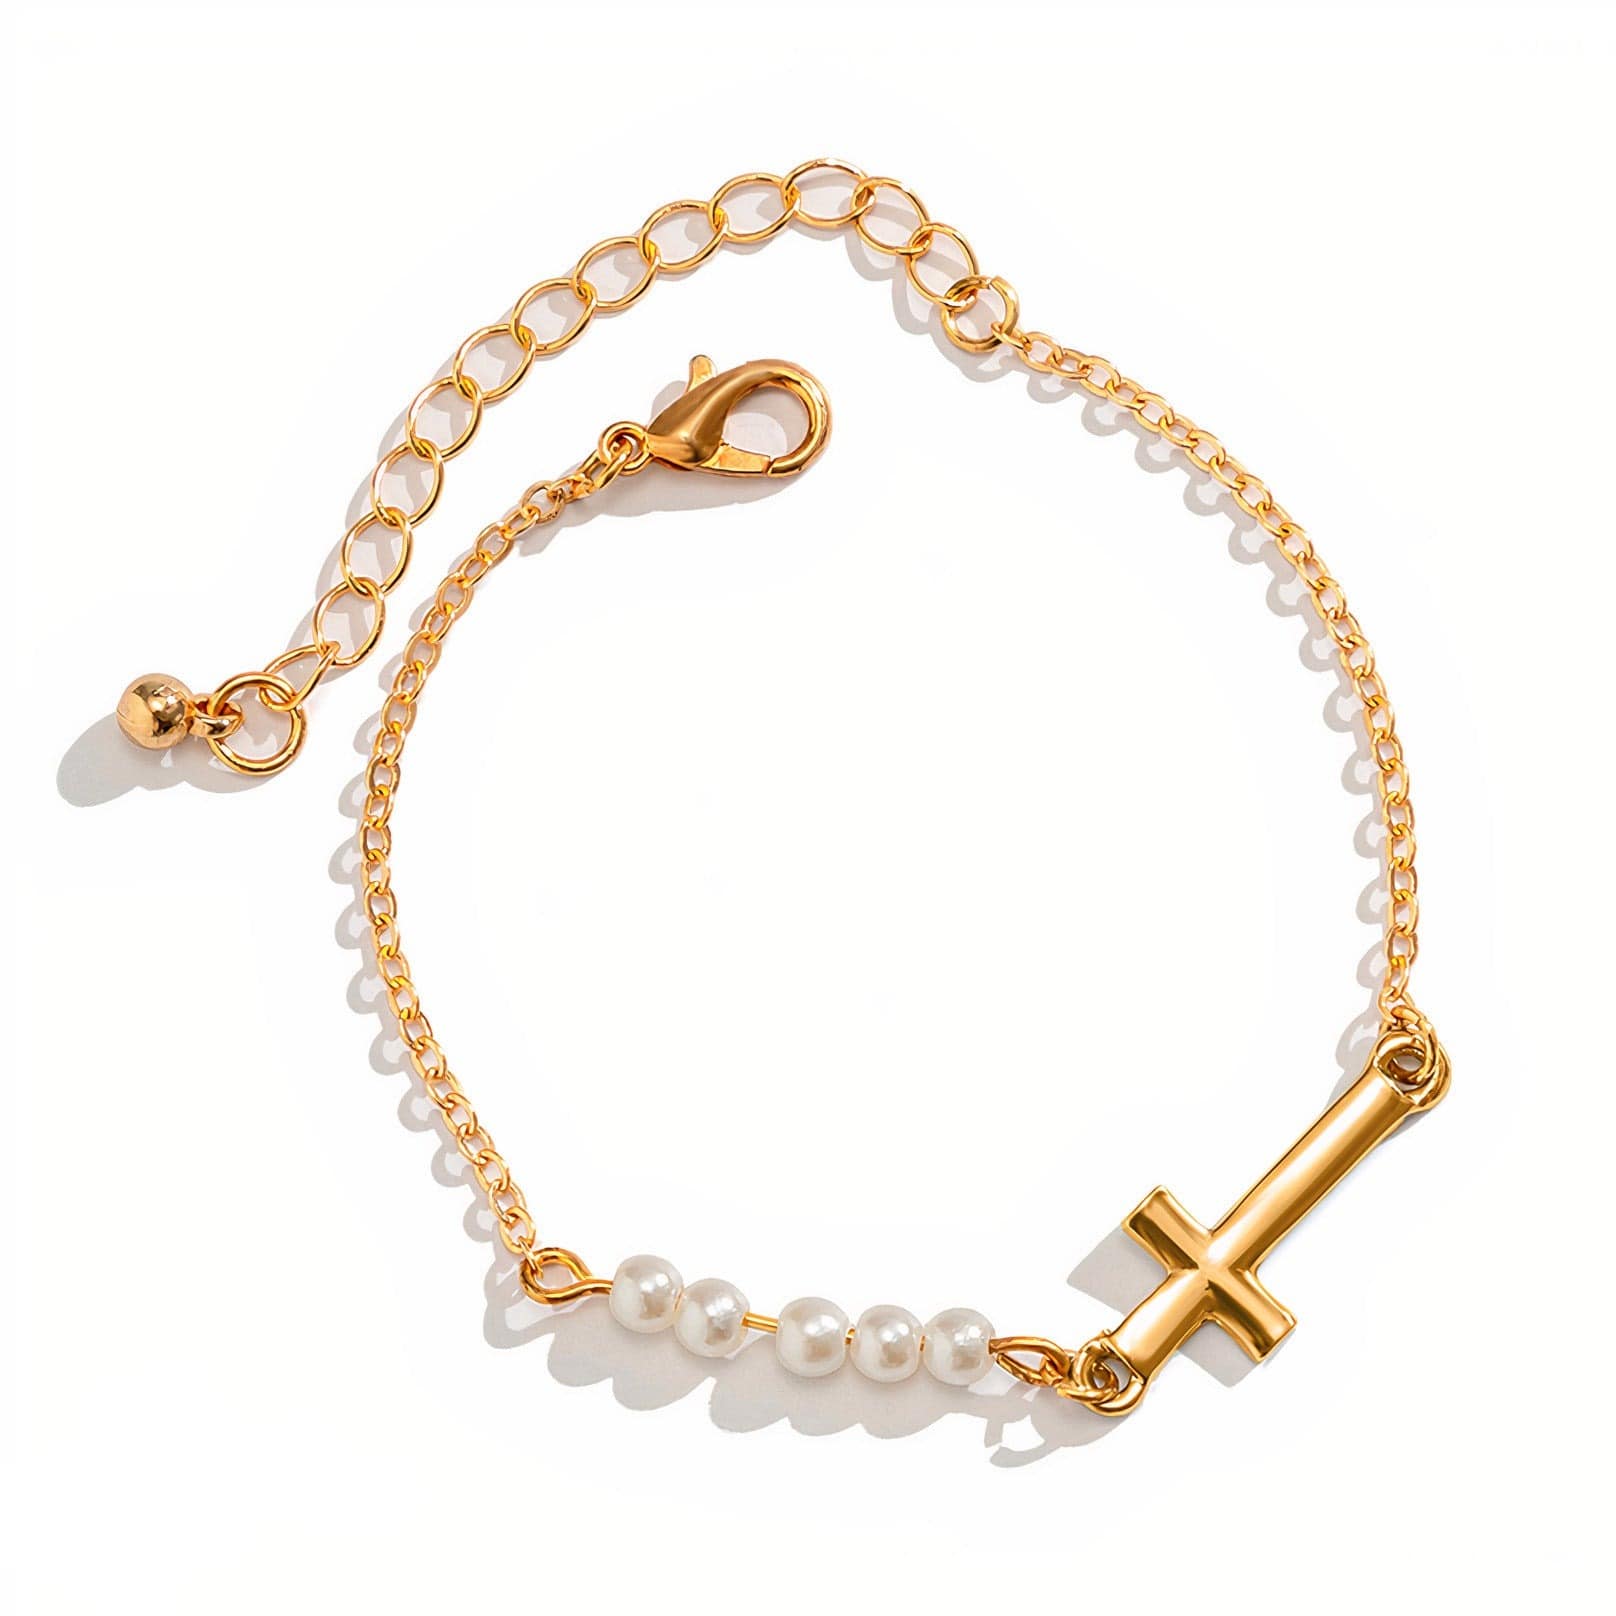 Bracelet taille enfant au message chrétien  Life et perles rose fushia -  Bracelet religieux